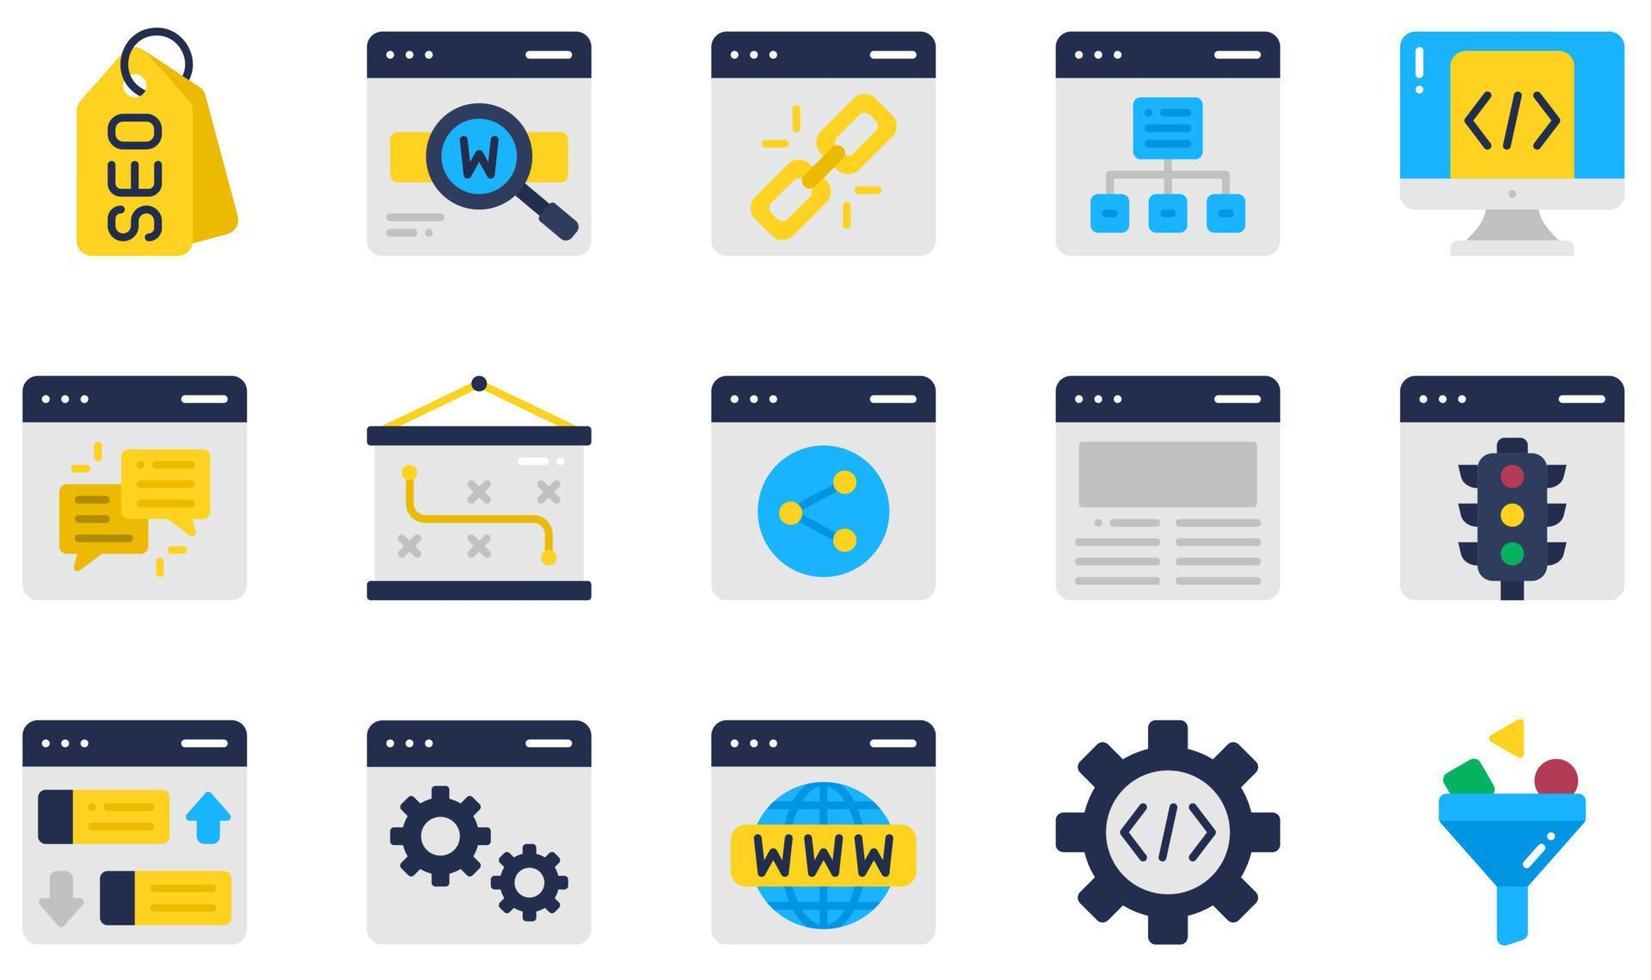 uppsättning vektor ikoner relaterade till seo och marknadsföring. innehåller sådana ikoner som seo-tagg, nyckelord, webbplatskarta, feedback, trafik, rankning och mer.